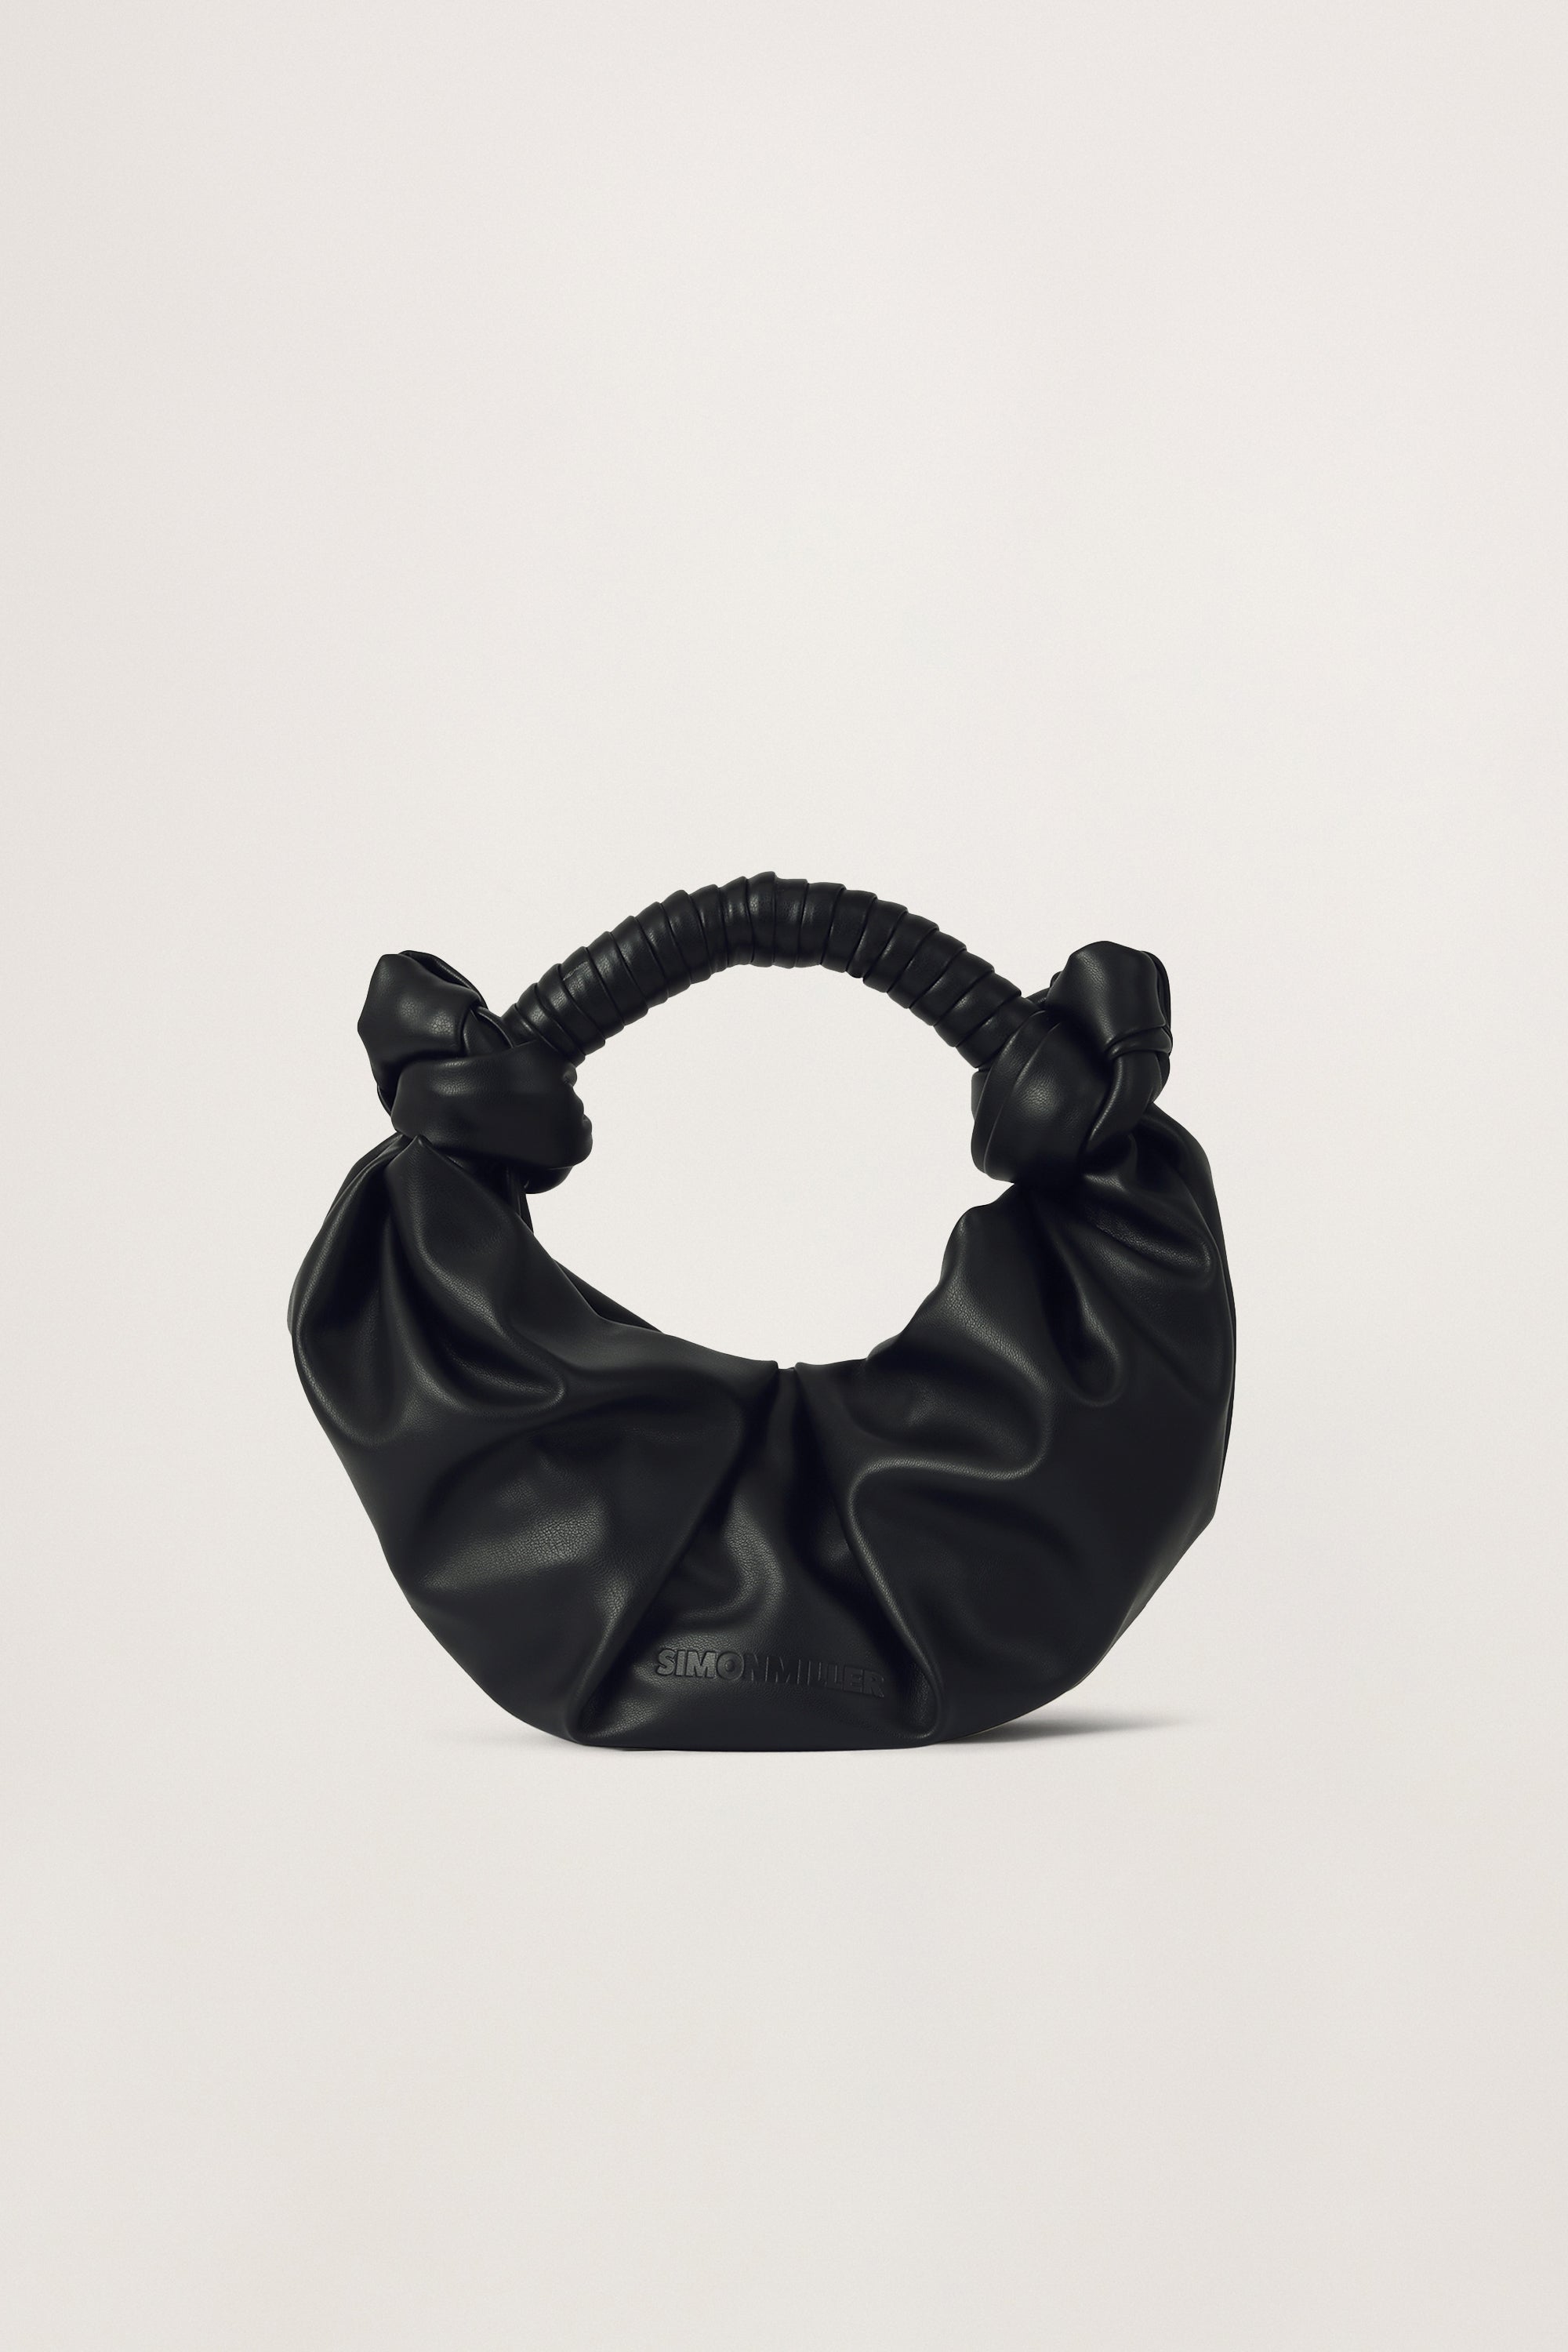 Vegan Leather Shoulder Bag with Handle Knots